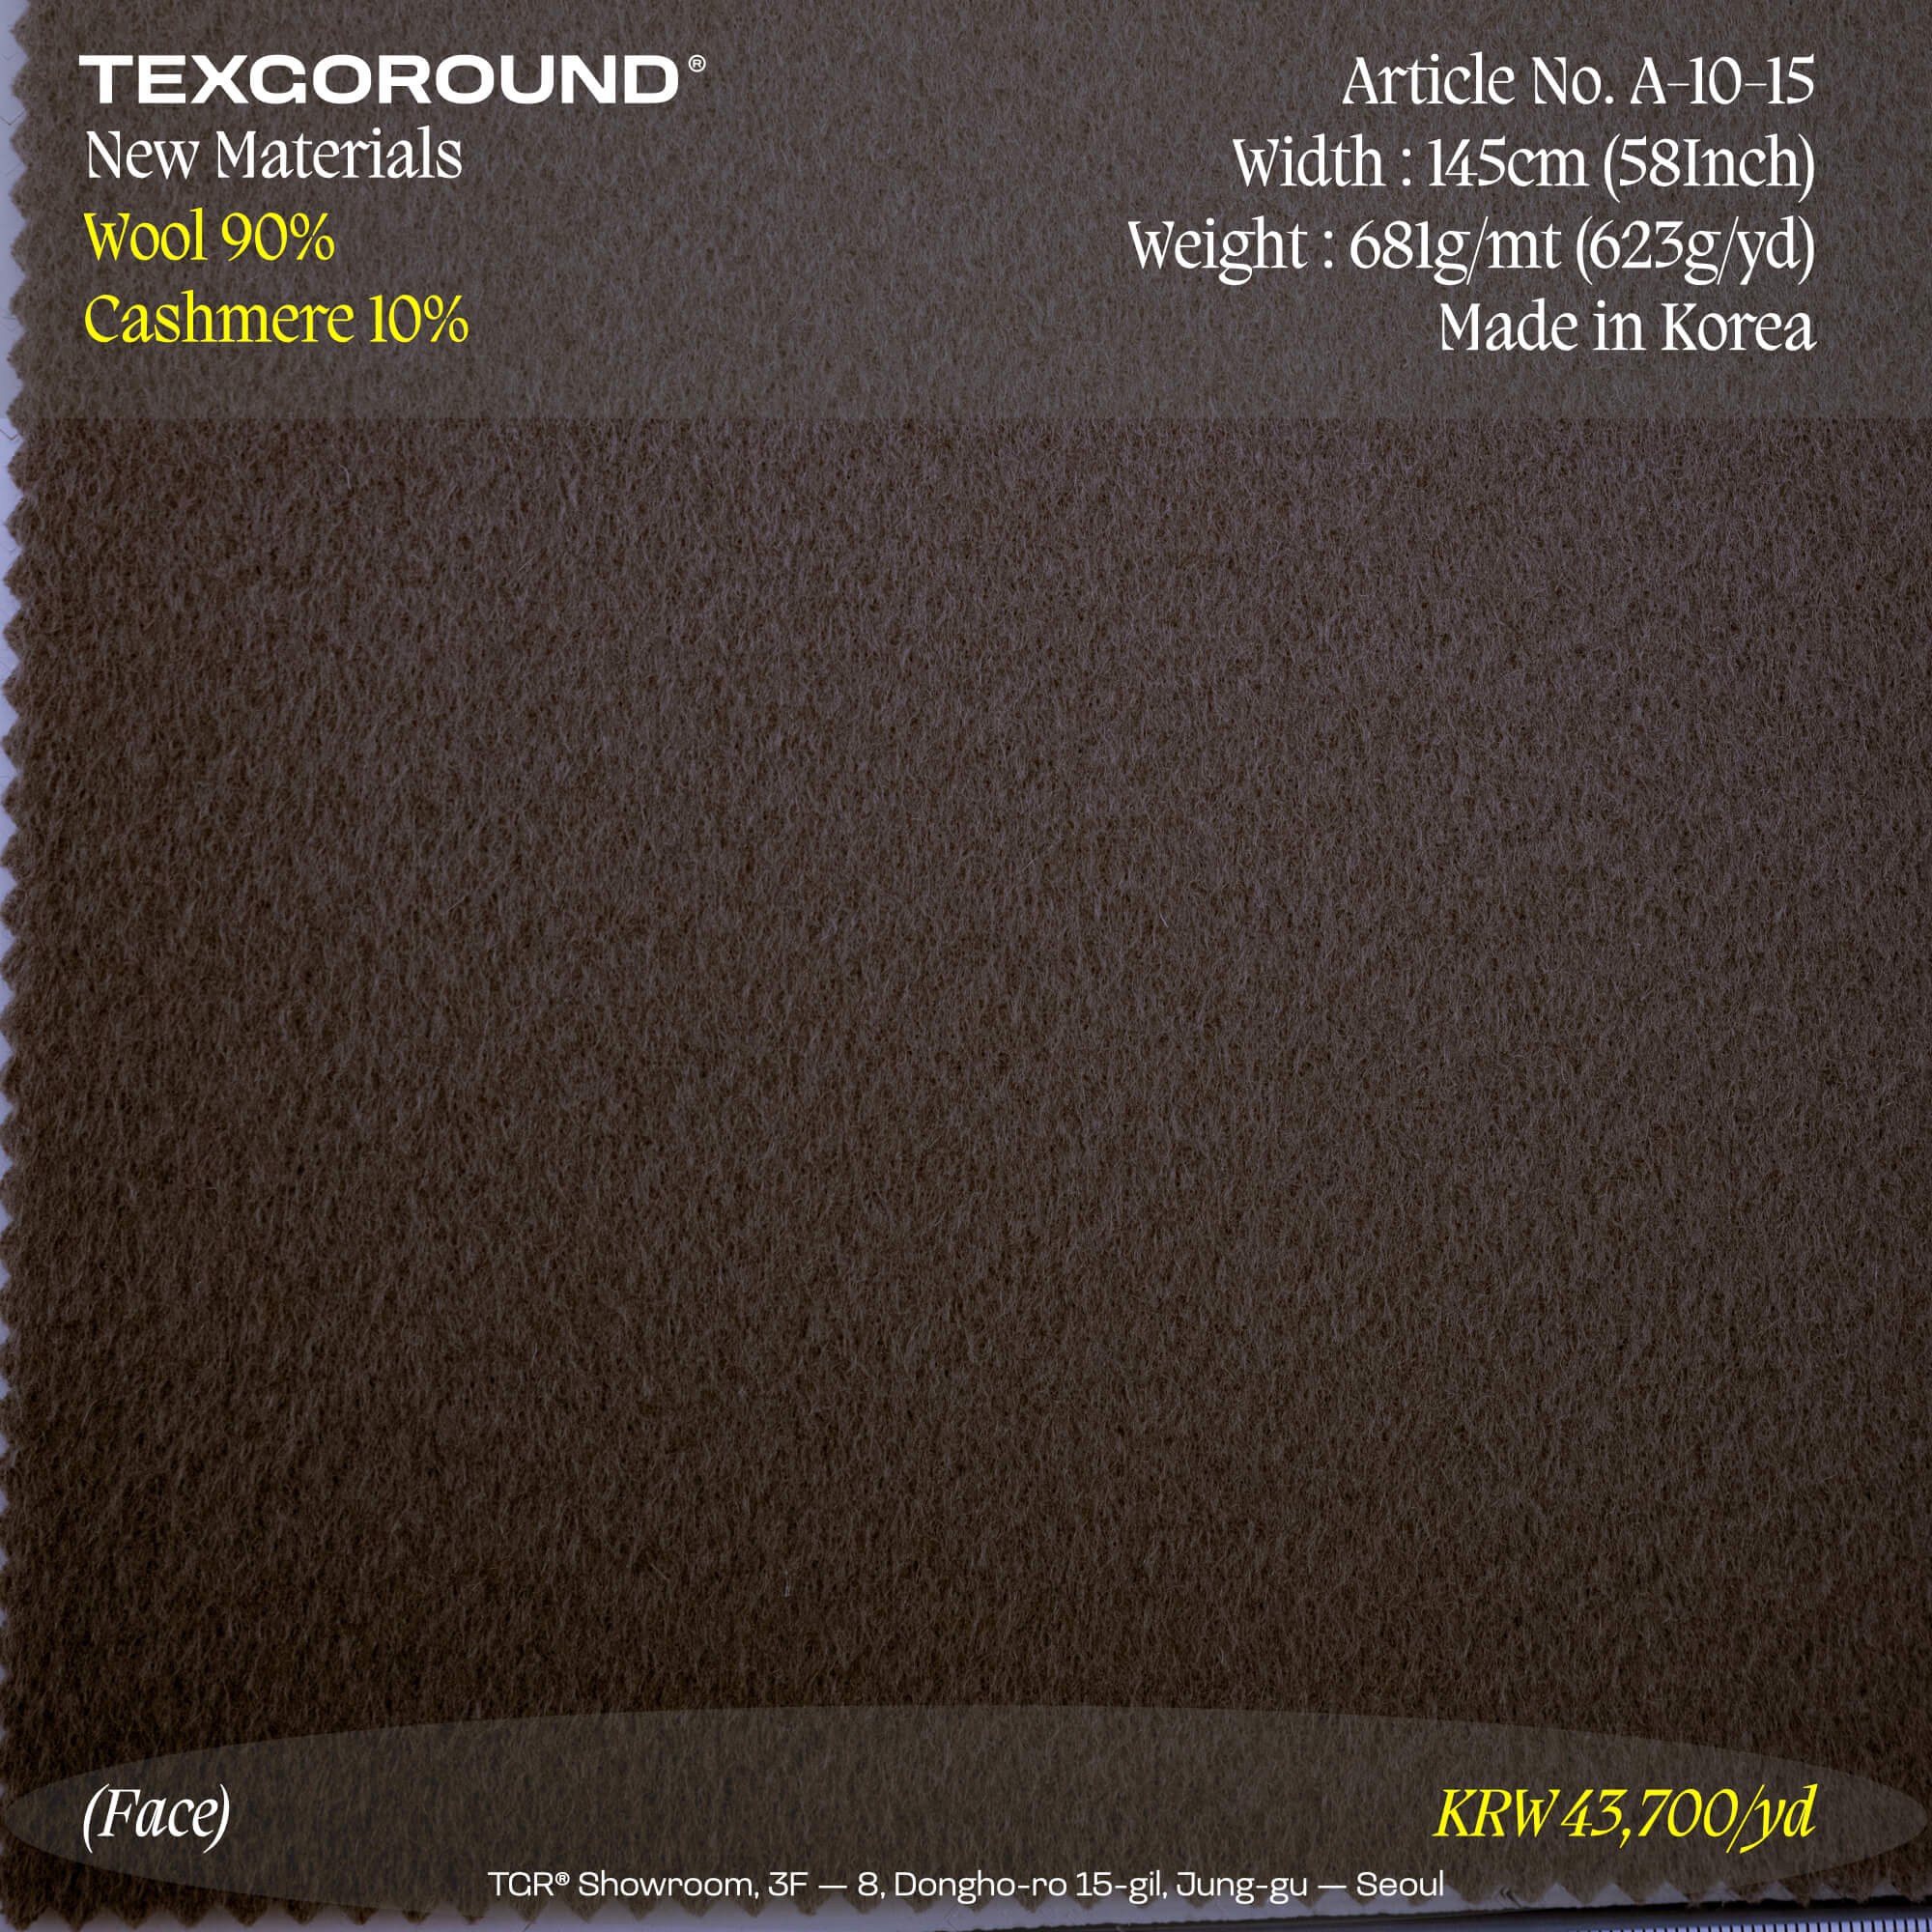 TEXGOROUND® New Materials (3) - Wool 90%, Cashmere 10%